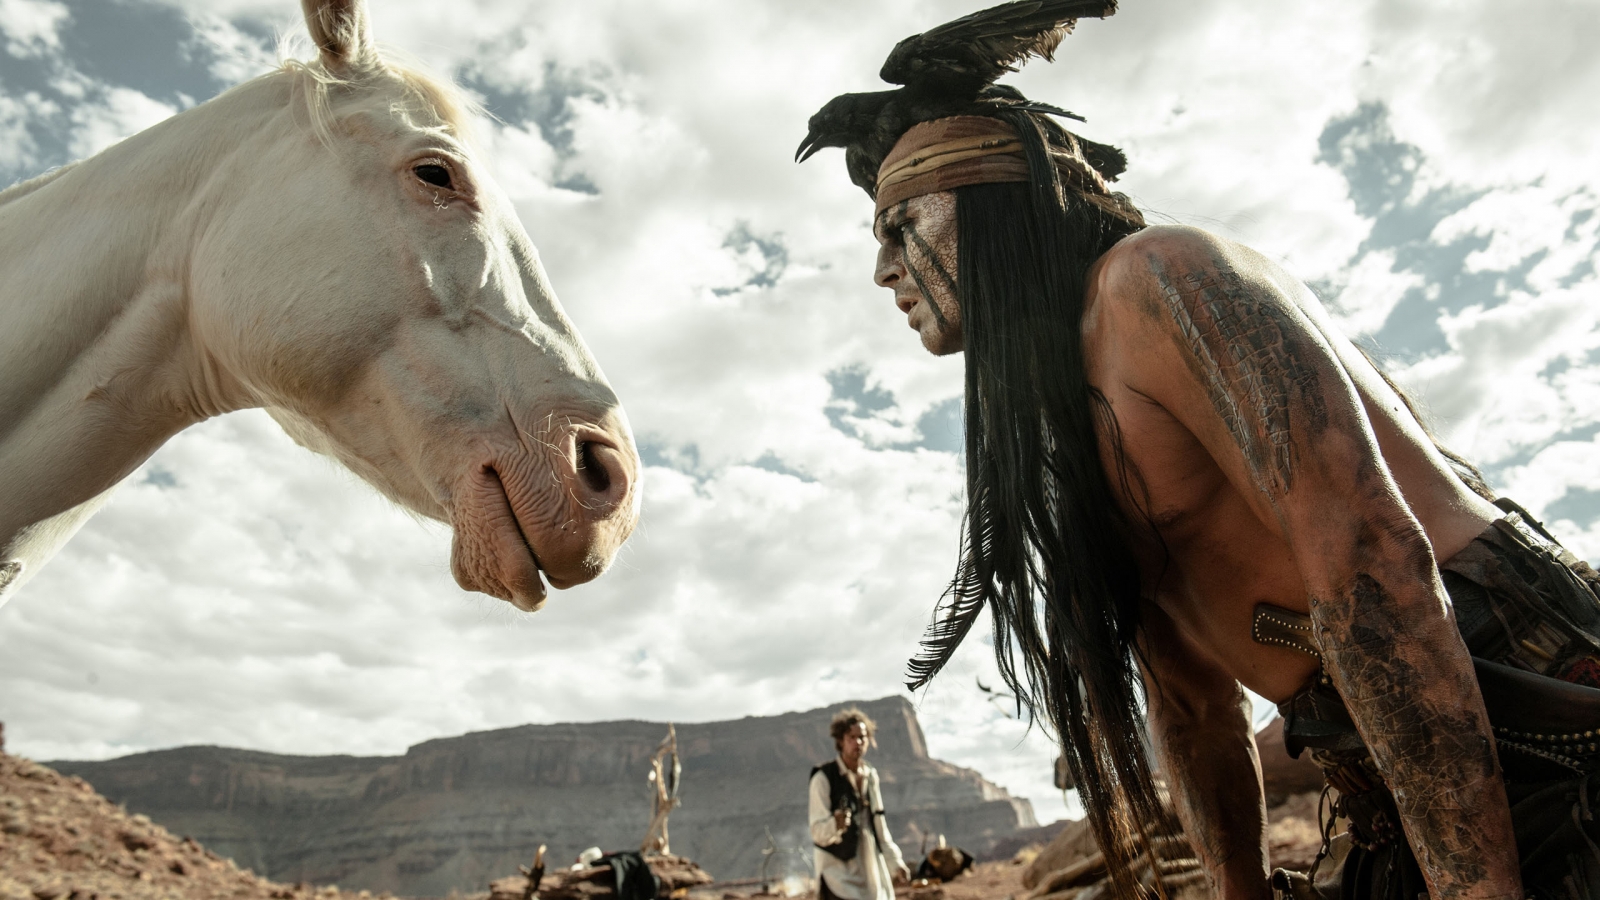 2013 The Lone Ranger Scene for 1600 x 900 HDTV resolution